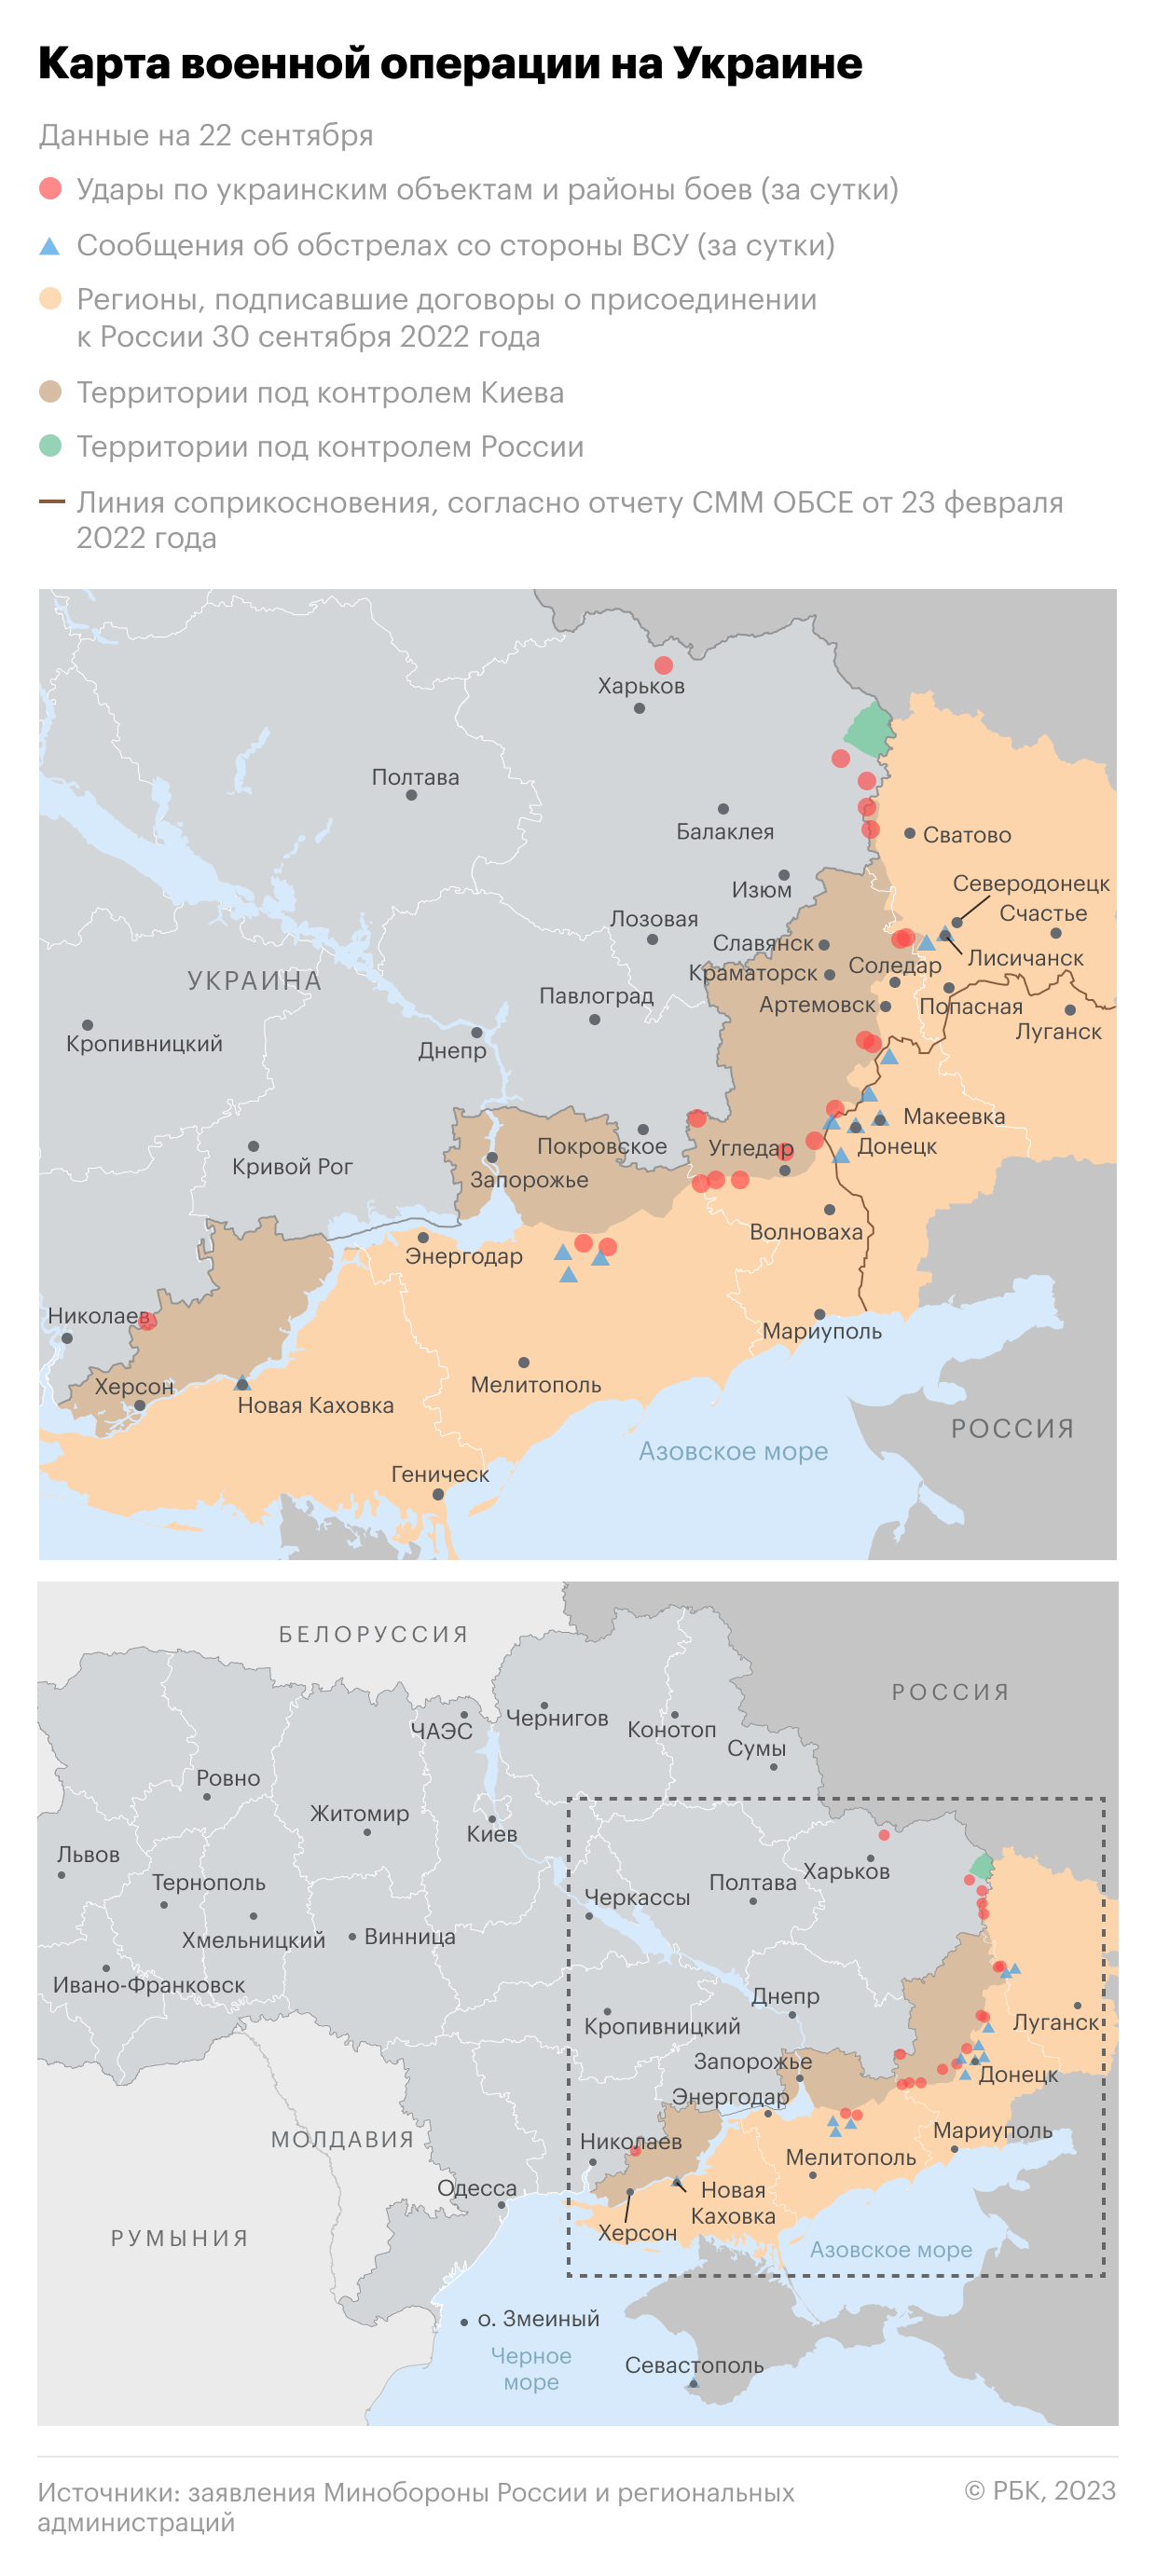 Военная операция на Украине. Карта на 22 сентября